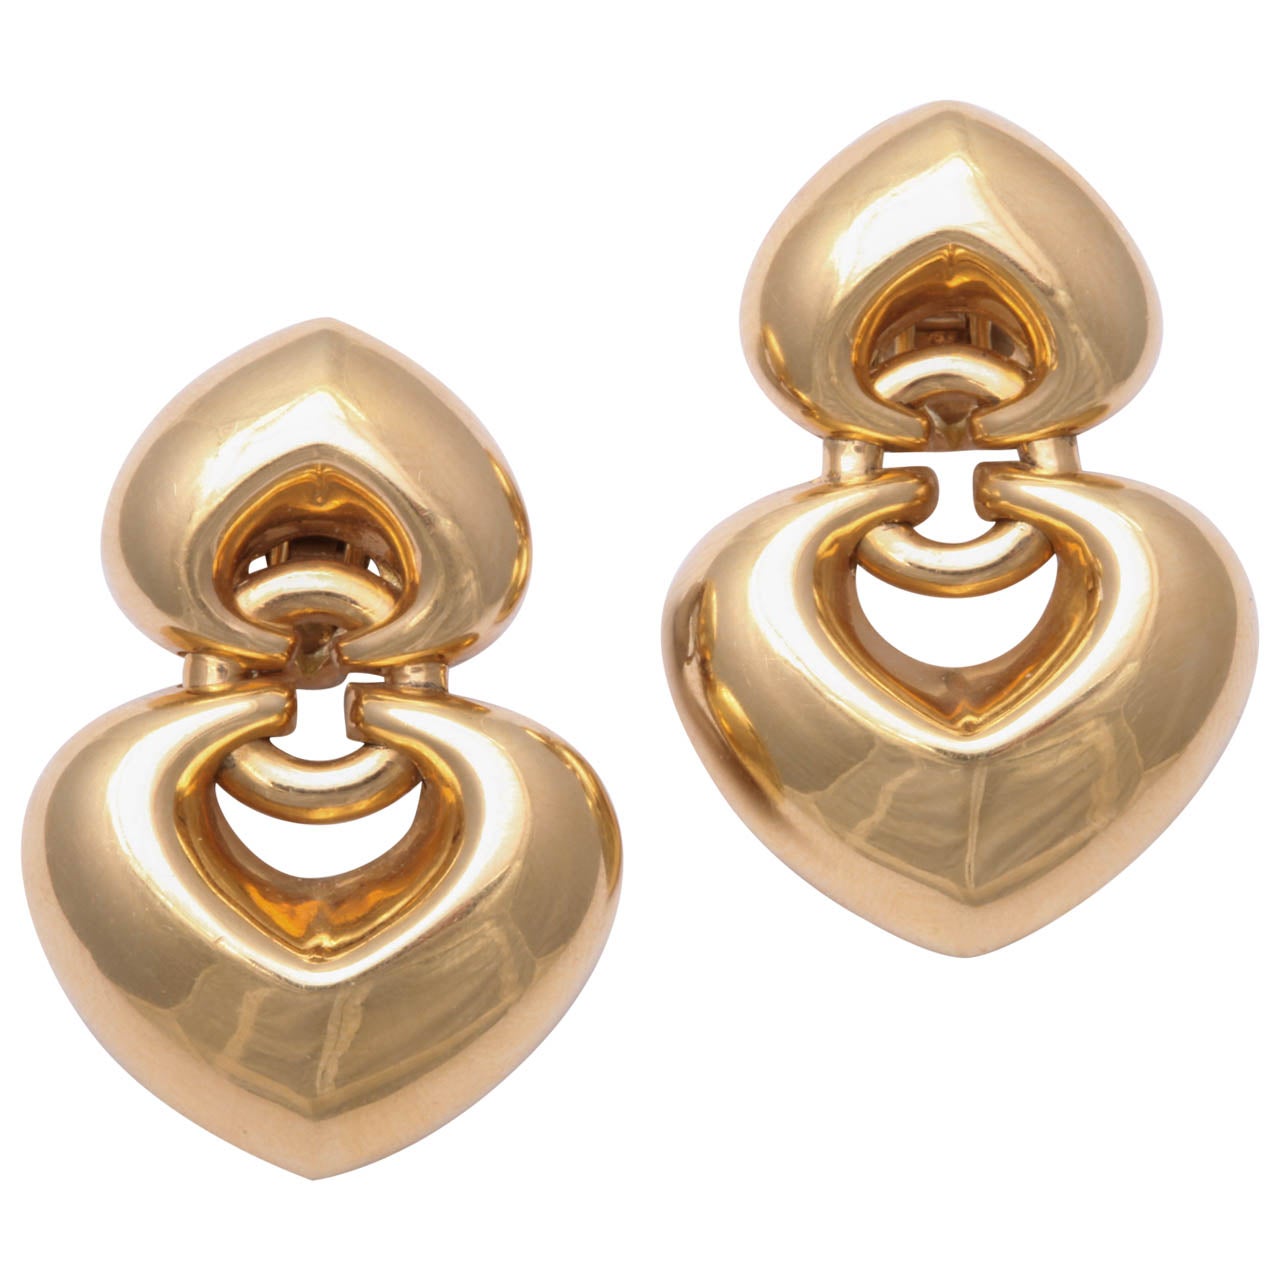 Bulgari Gold Heart Earrings